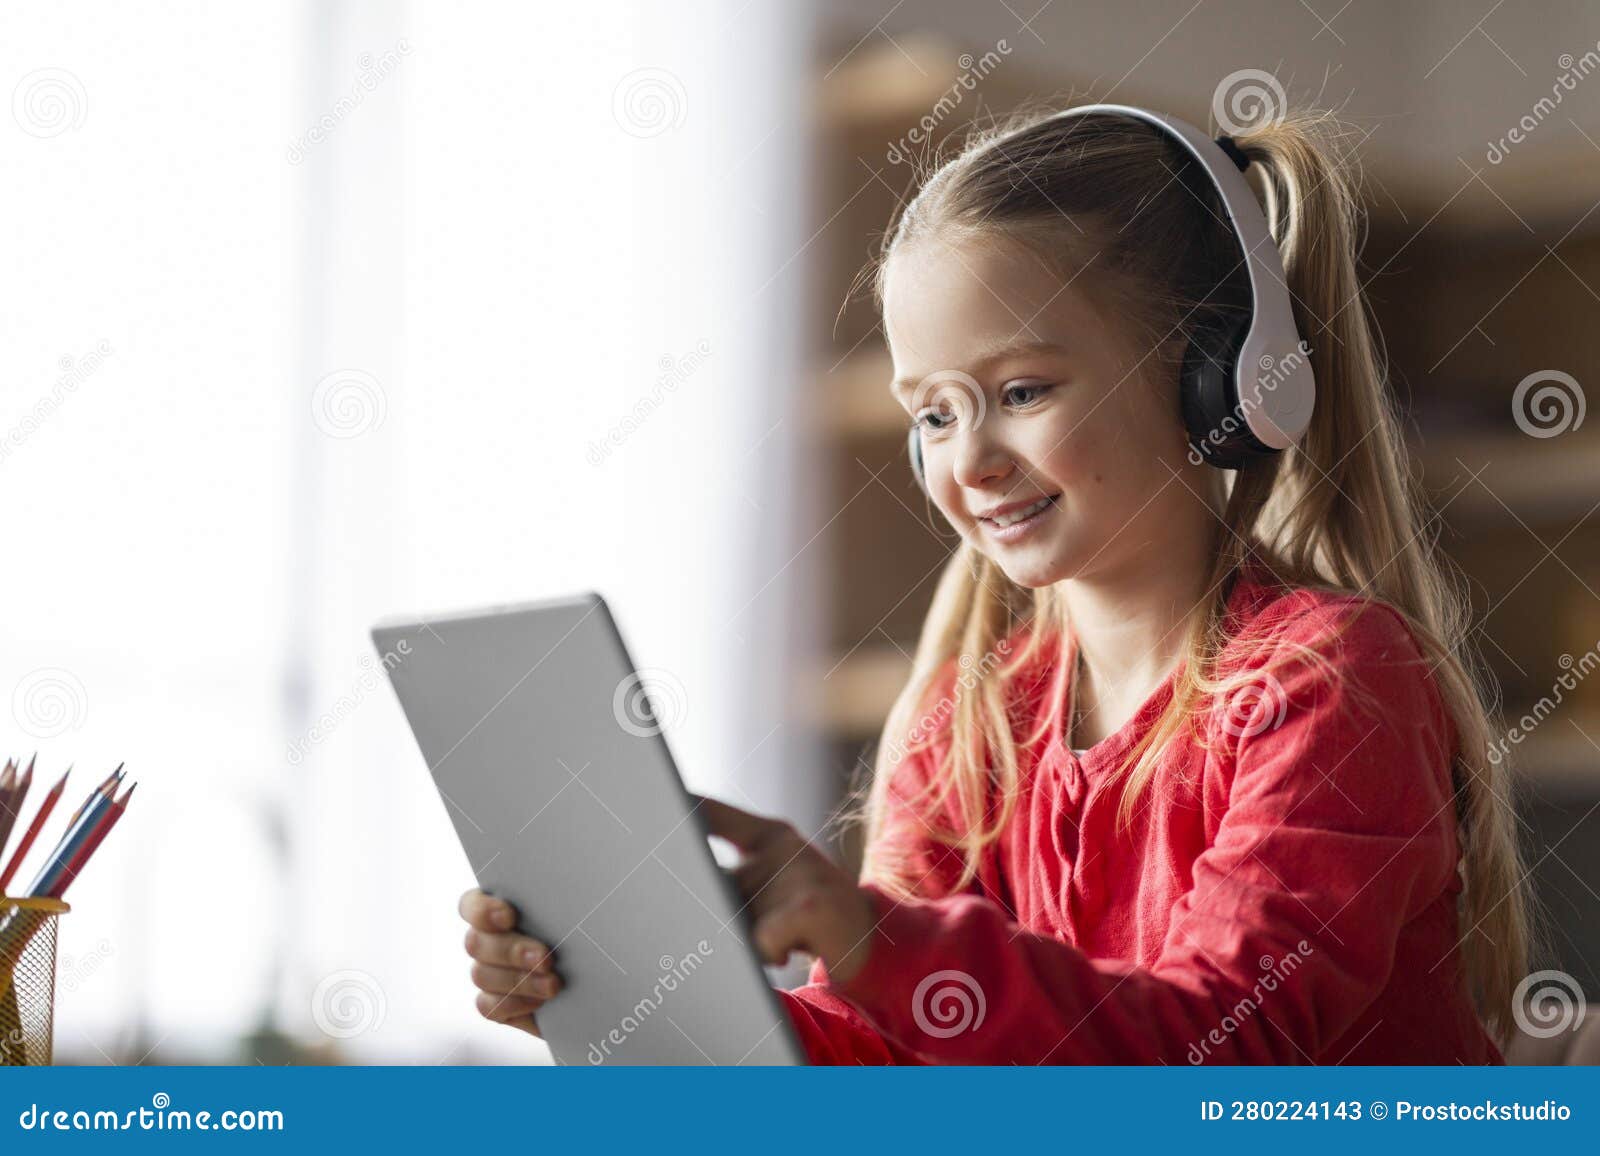 menina bonitinha sentada no chão usando tablet digital tocando a